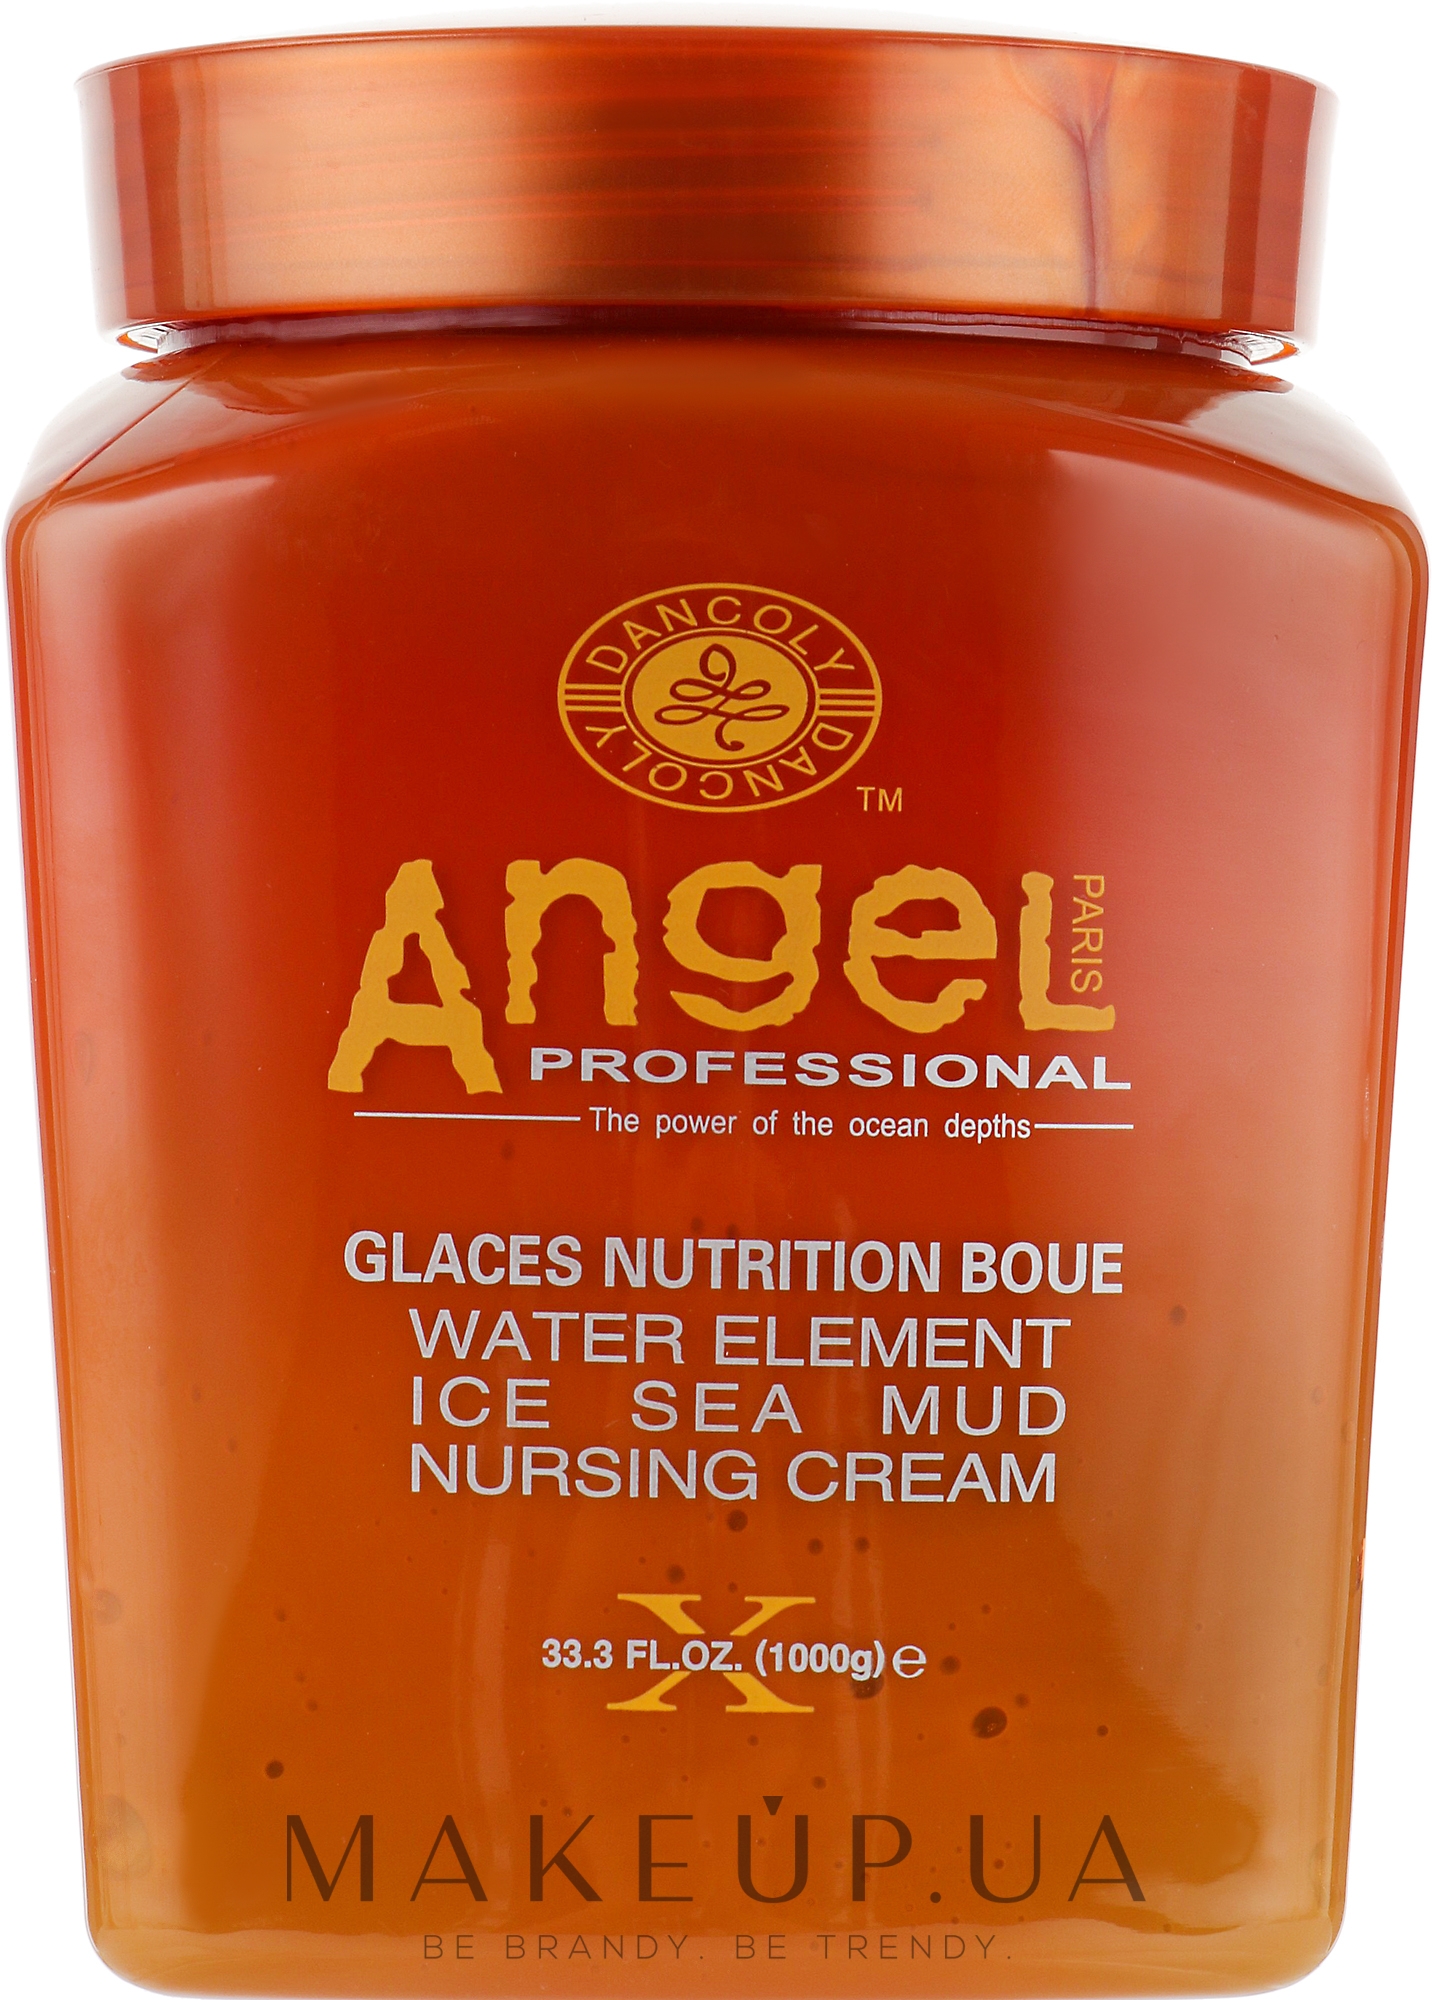 Питательный крем для волос с замороженной морской грязью - Angel Professional Paris Water Element Ice Sea Mud Nursing Cream — фото 1000g